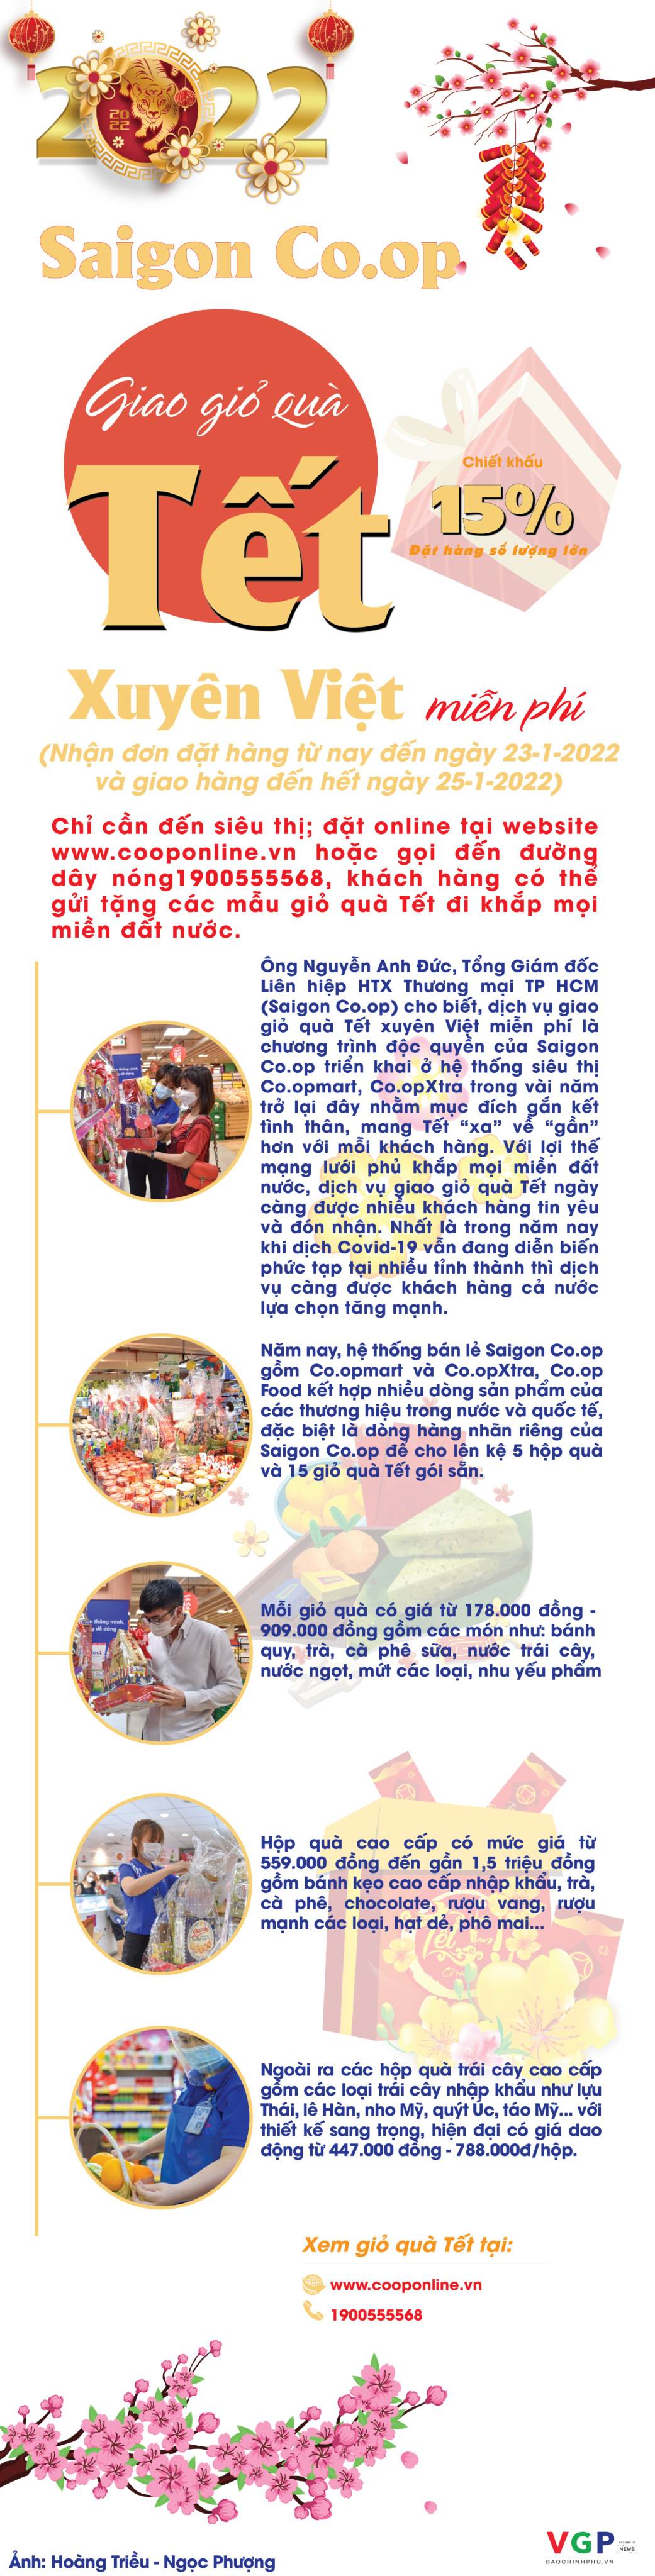 Giao giỏ quà Tết xuyên Việt miễn phí cùng Saigon Co.op - Ảnh 1.